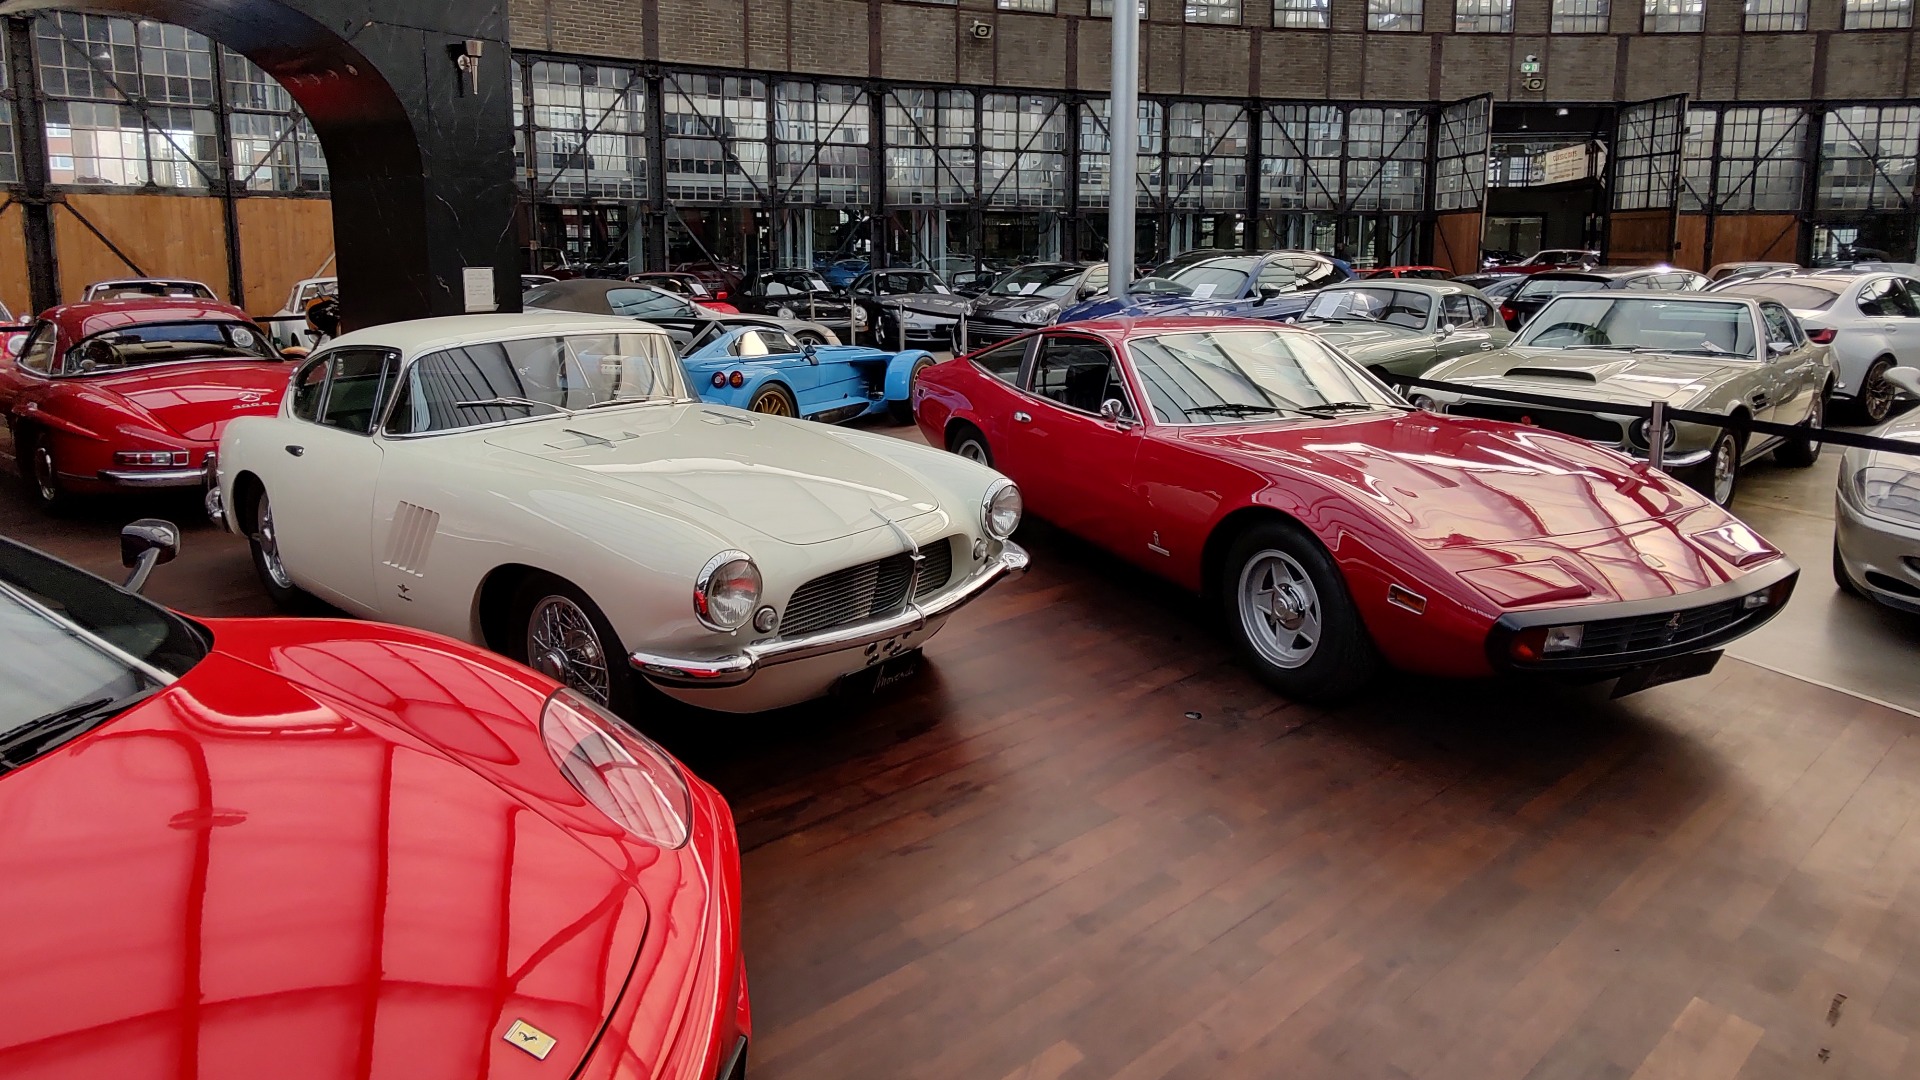 Moverdi selger klassiske biler av høy standard, her med en fantastisk Pegaso som midtpunkt mellom to Ferrarier.